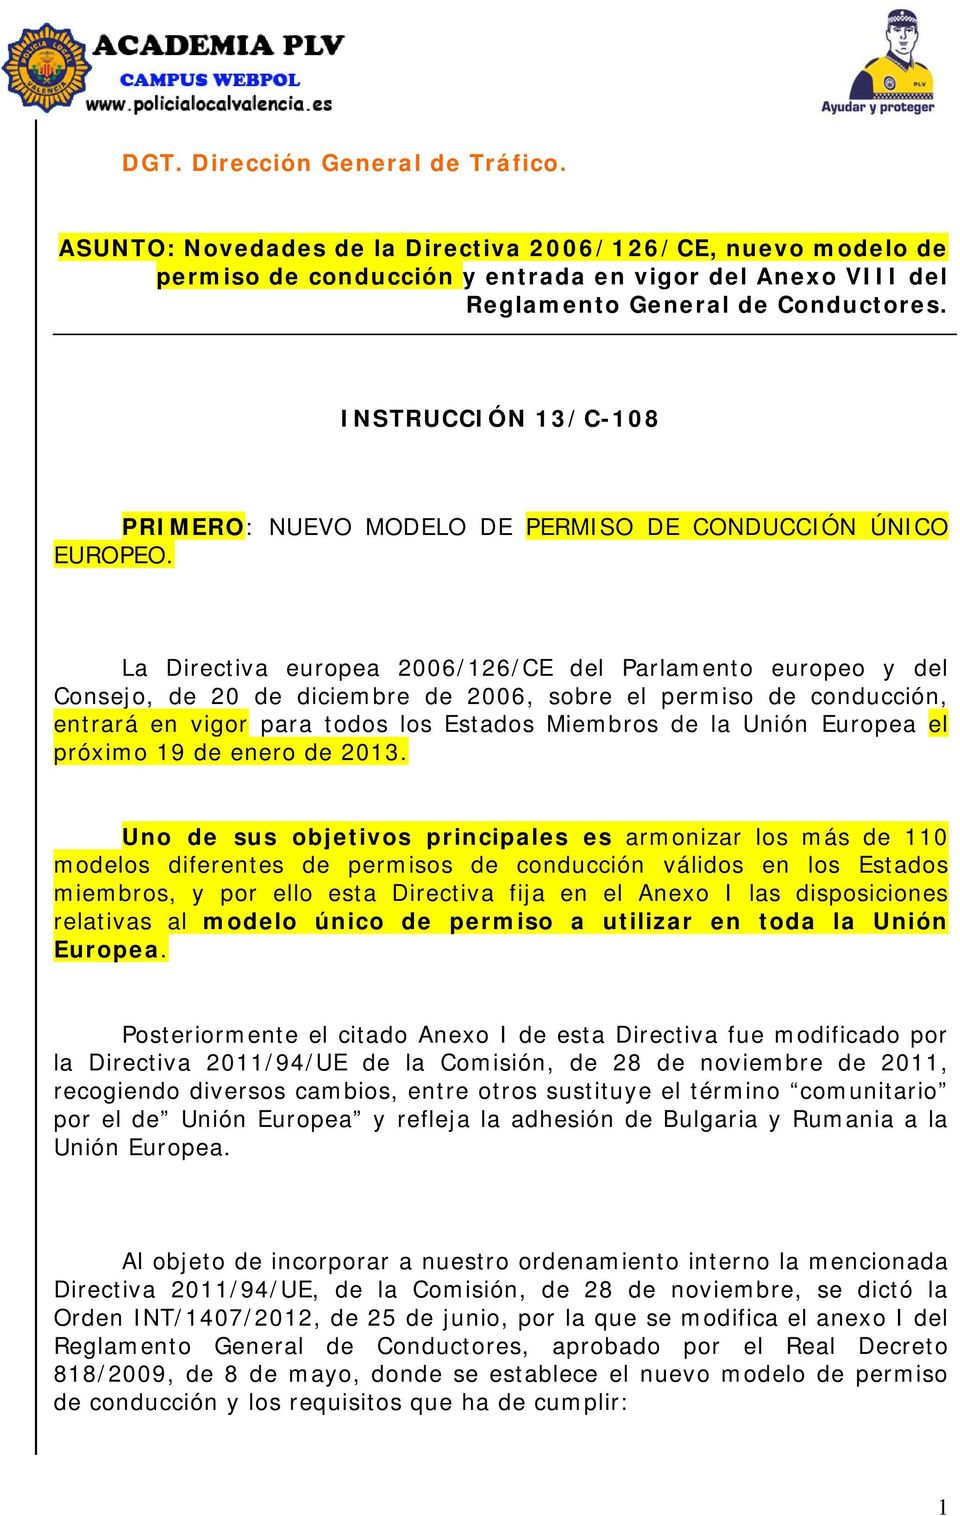 La Directiva europea 2006/126/CE del Parlamento europeo y del Consejo, de 20 de diciembre de 2006, sobre el permiso de conducción, entrará en vigor para todos los Estados Miembros de la Unión Europea